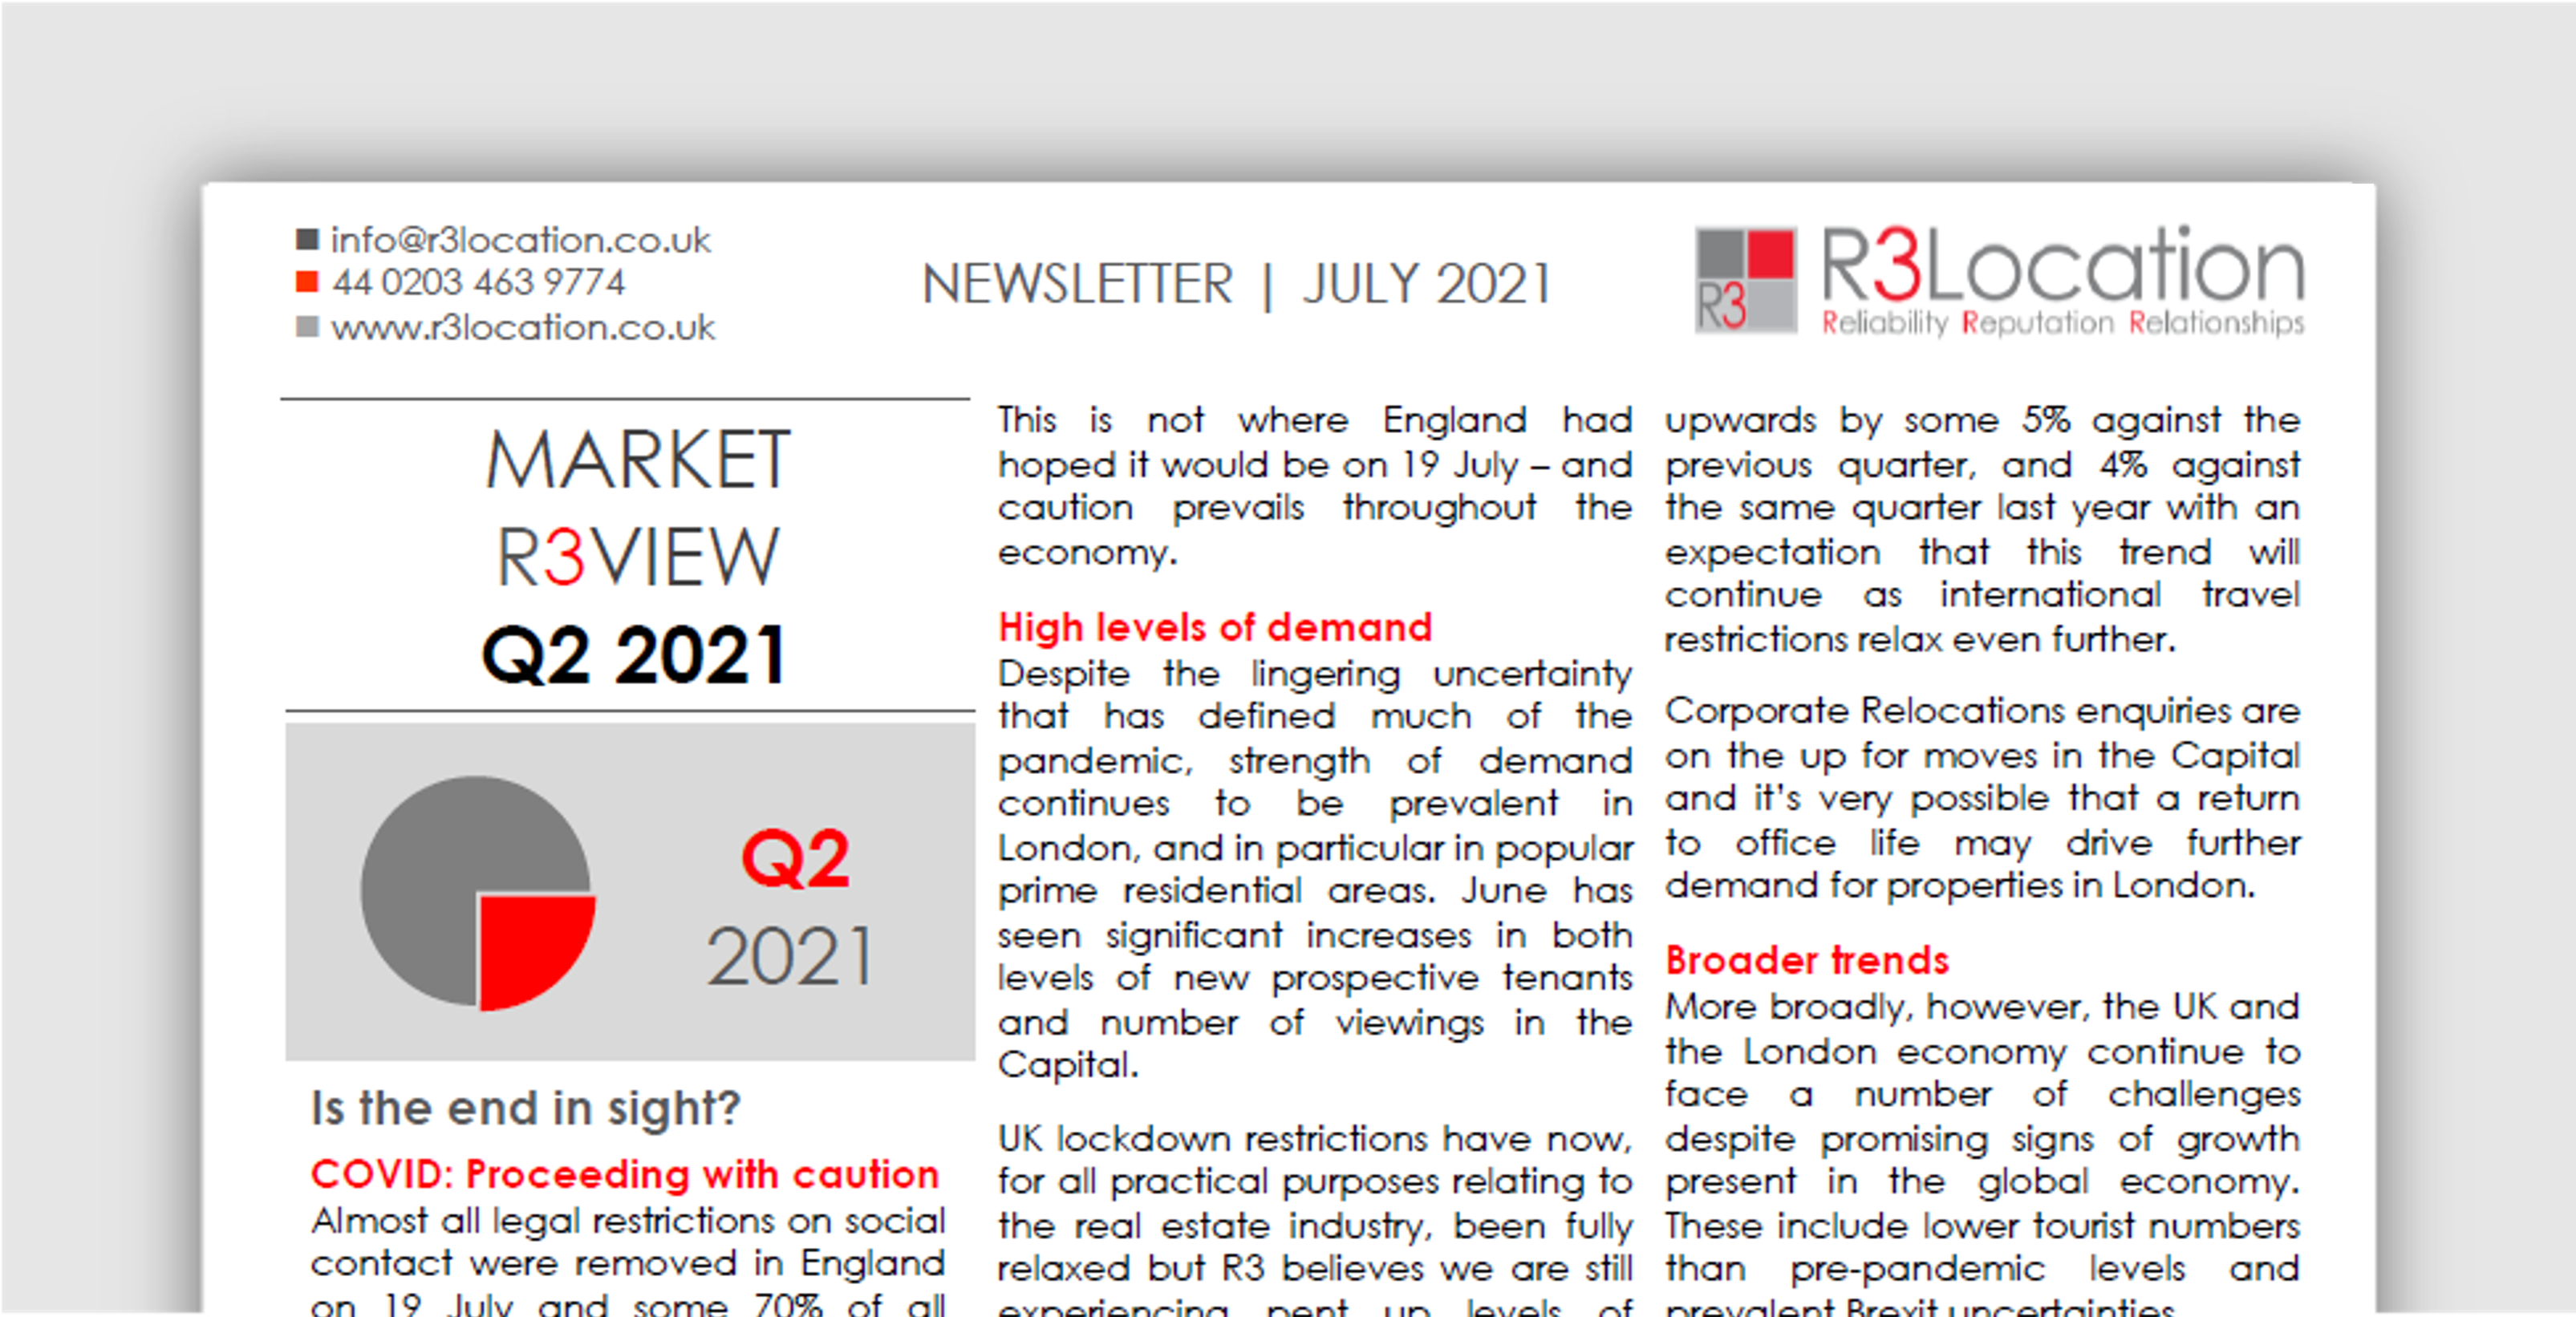 Market R3view Q2 2021